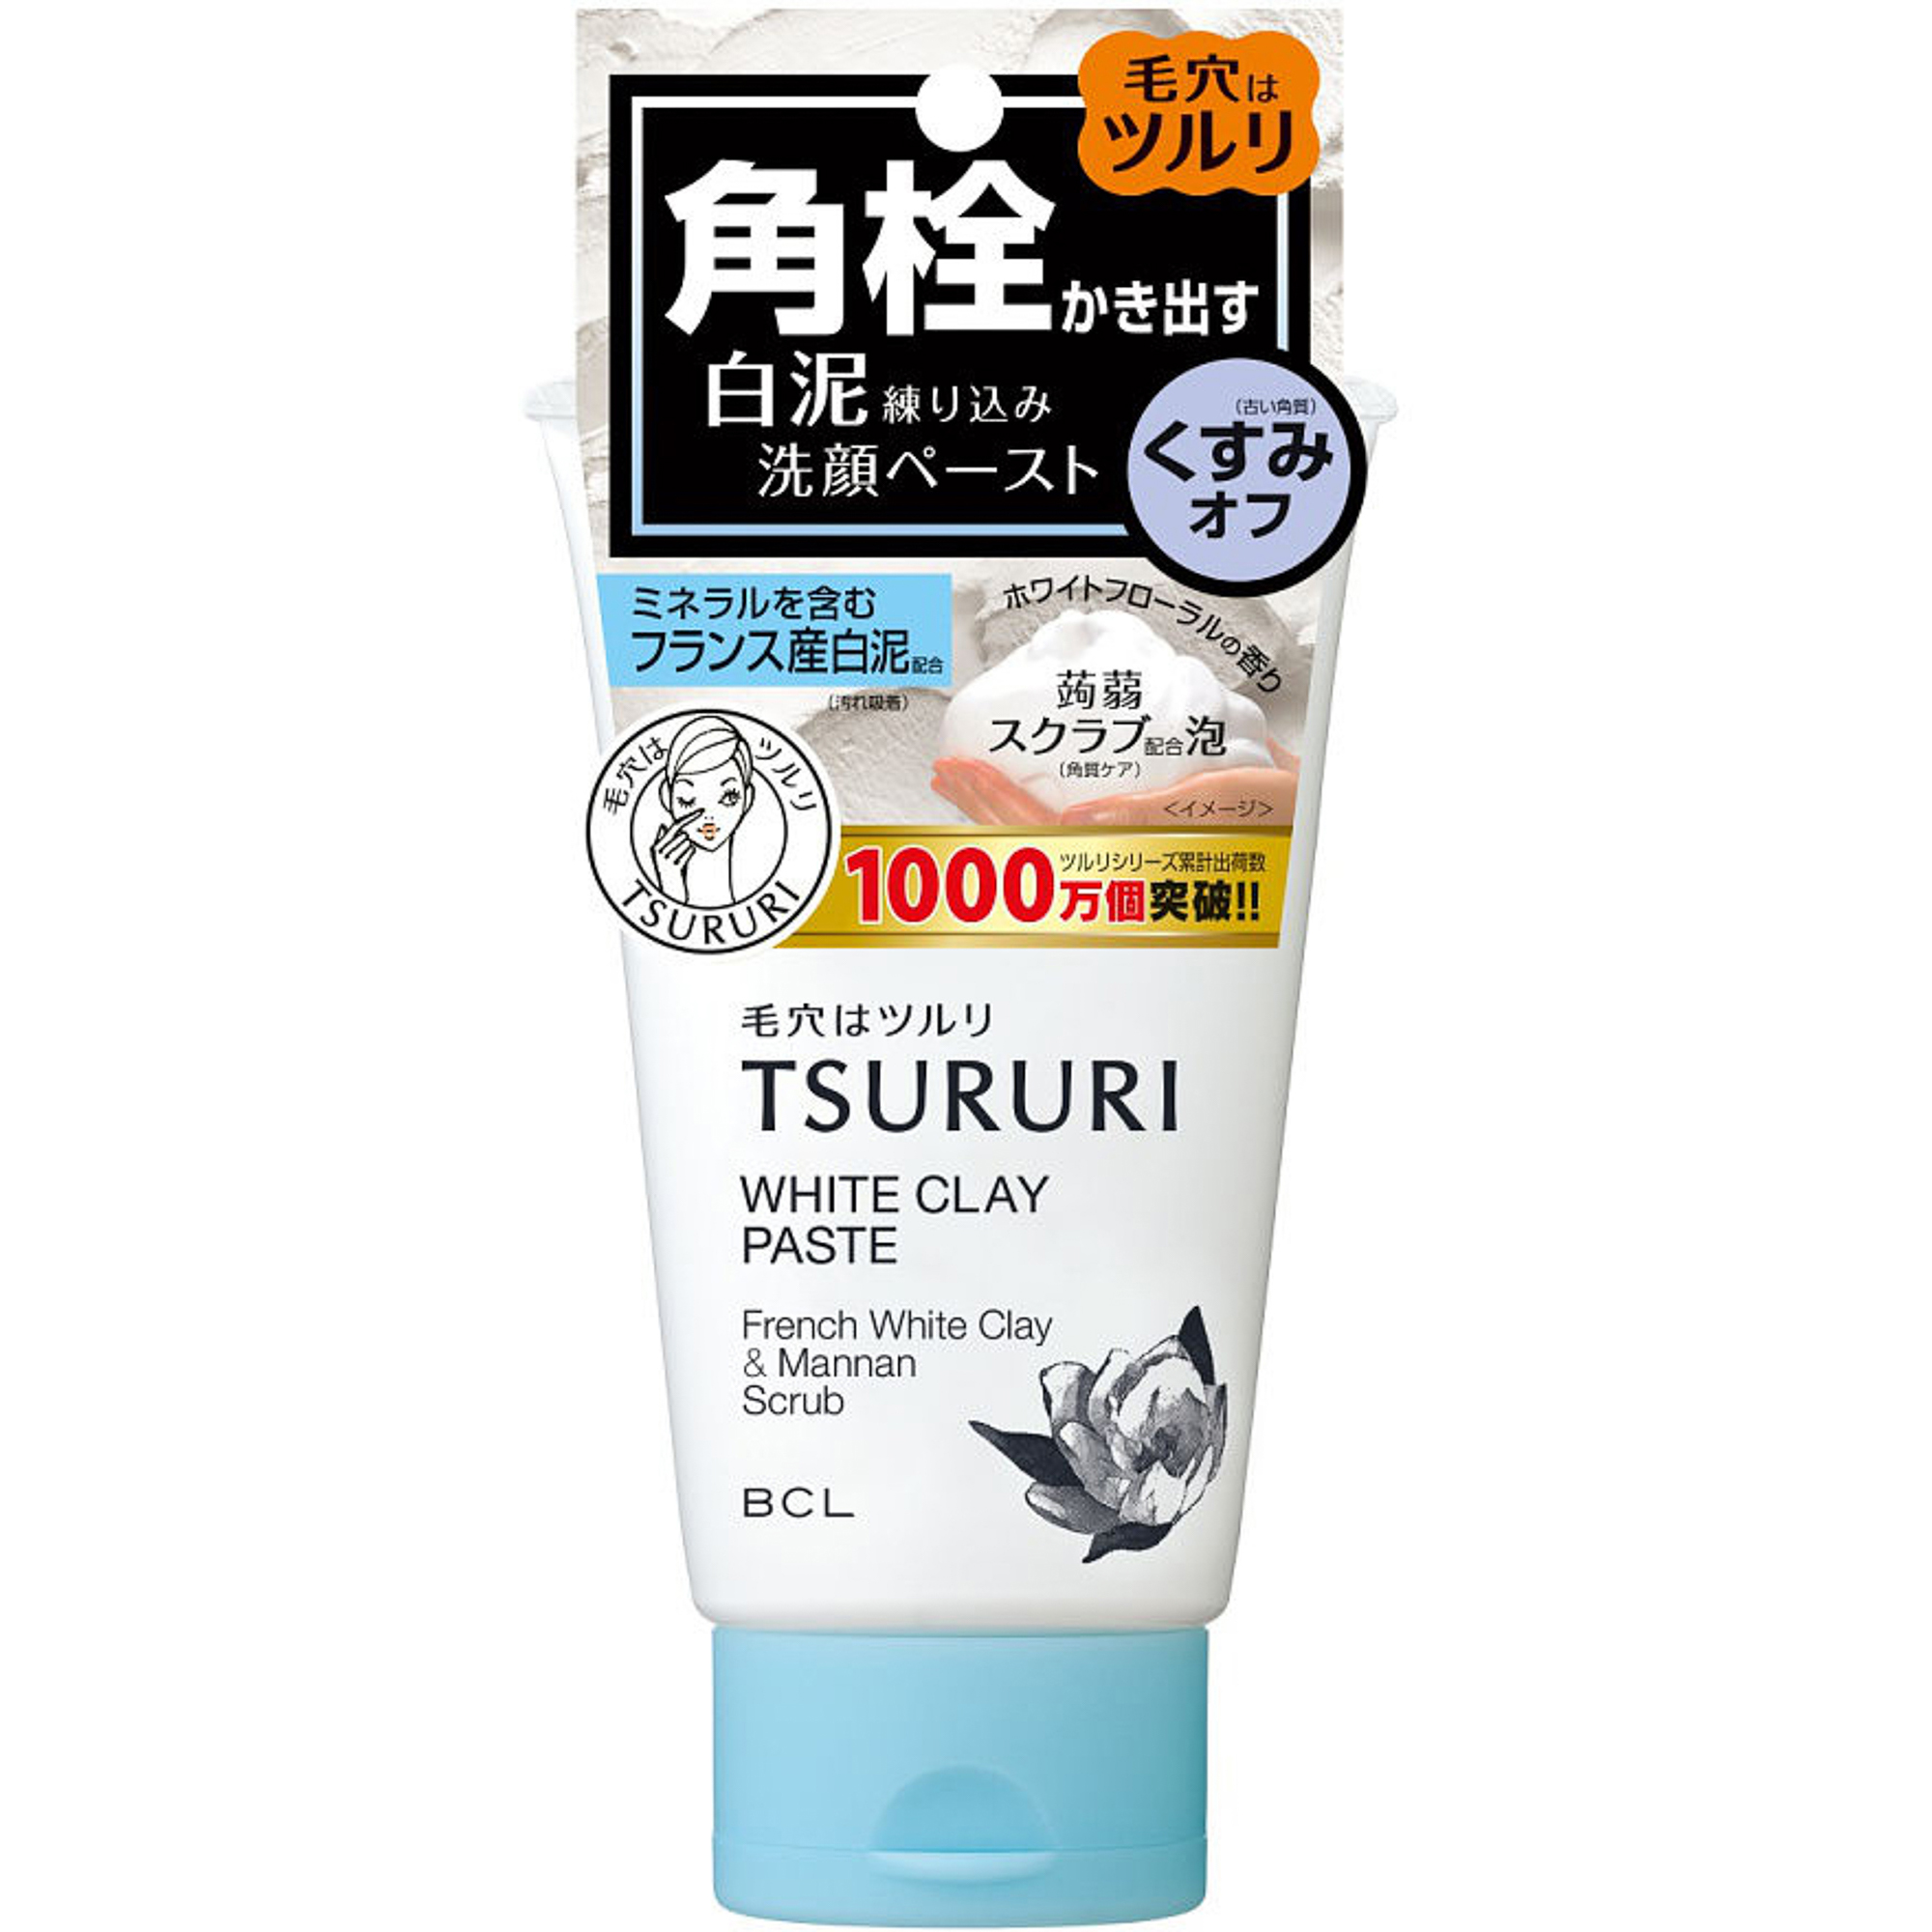 Пенка-скраб Tsururi для глубокого очищения кожи с французской белой глиной и японским маннаном 120 г пенка скраб tsururi для глубокого очищения кожи с вулканической глиной 120 г